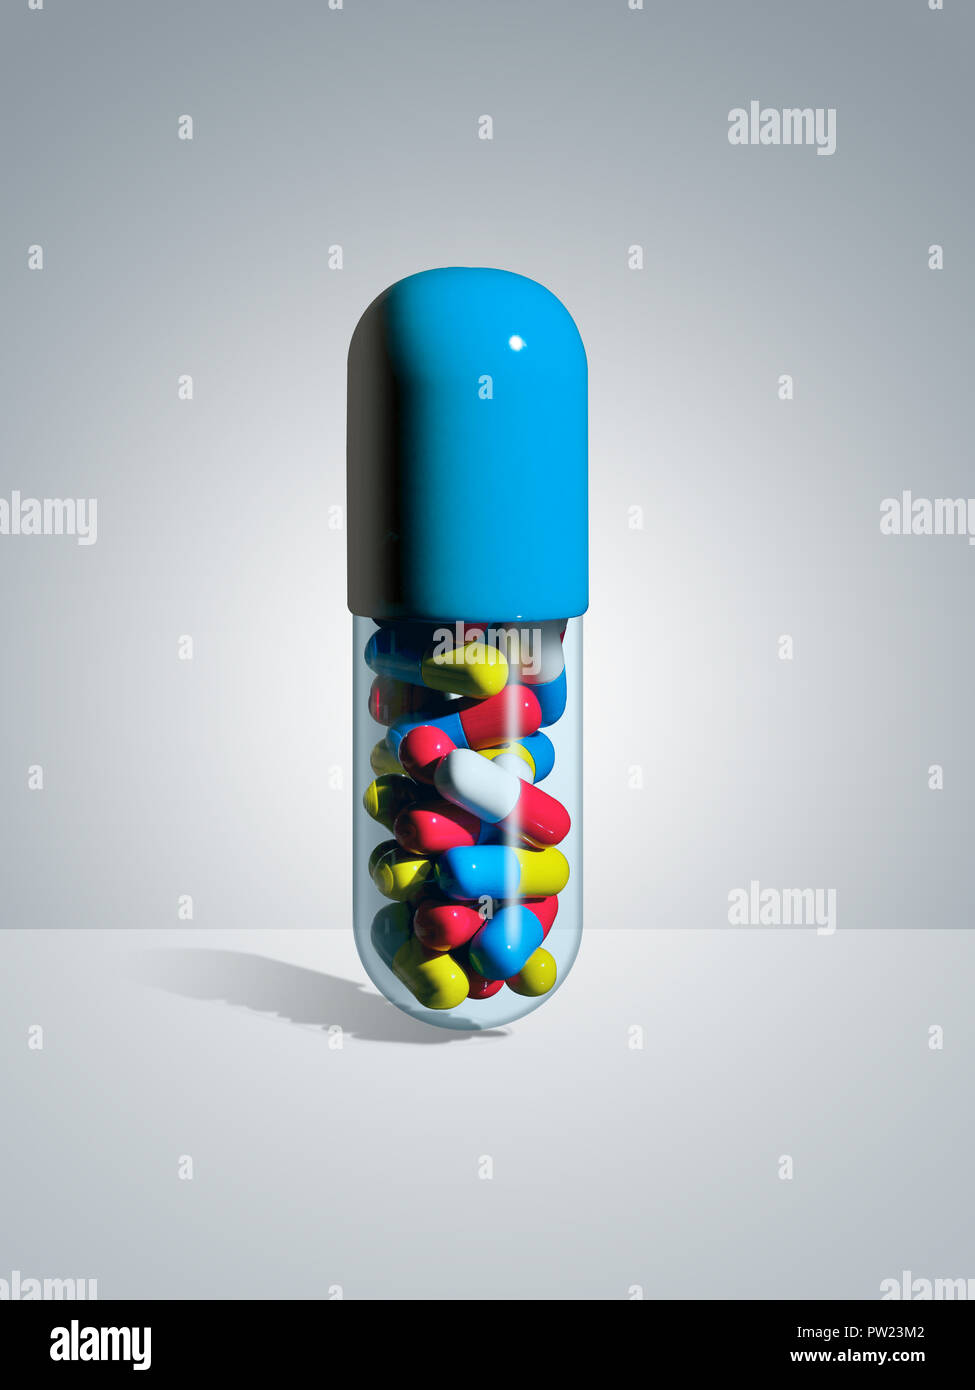 Concetto di una pillola blu riempita con colori più piccole pillole, Overmedicated, oltre prescritto, abuso di droga, nascosto, cocktail di farmaci Foto Stock